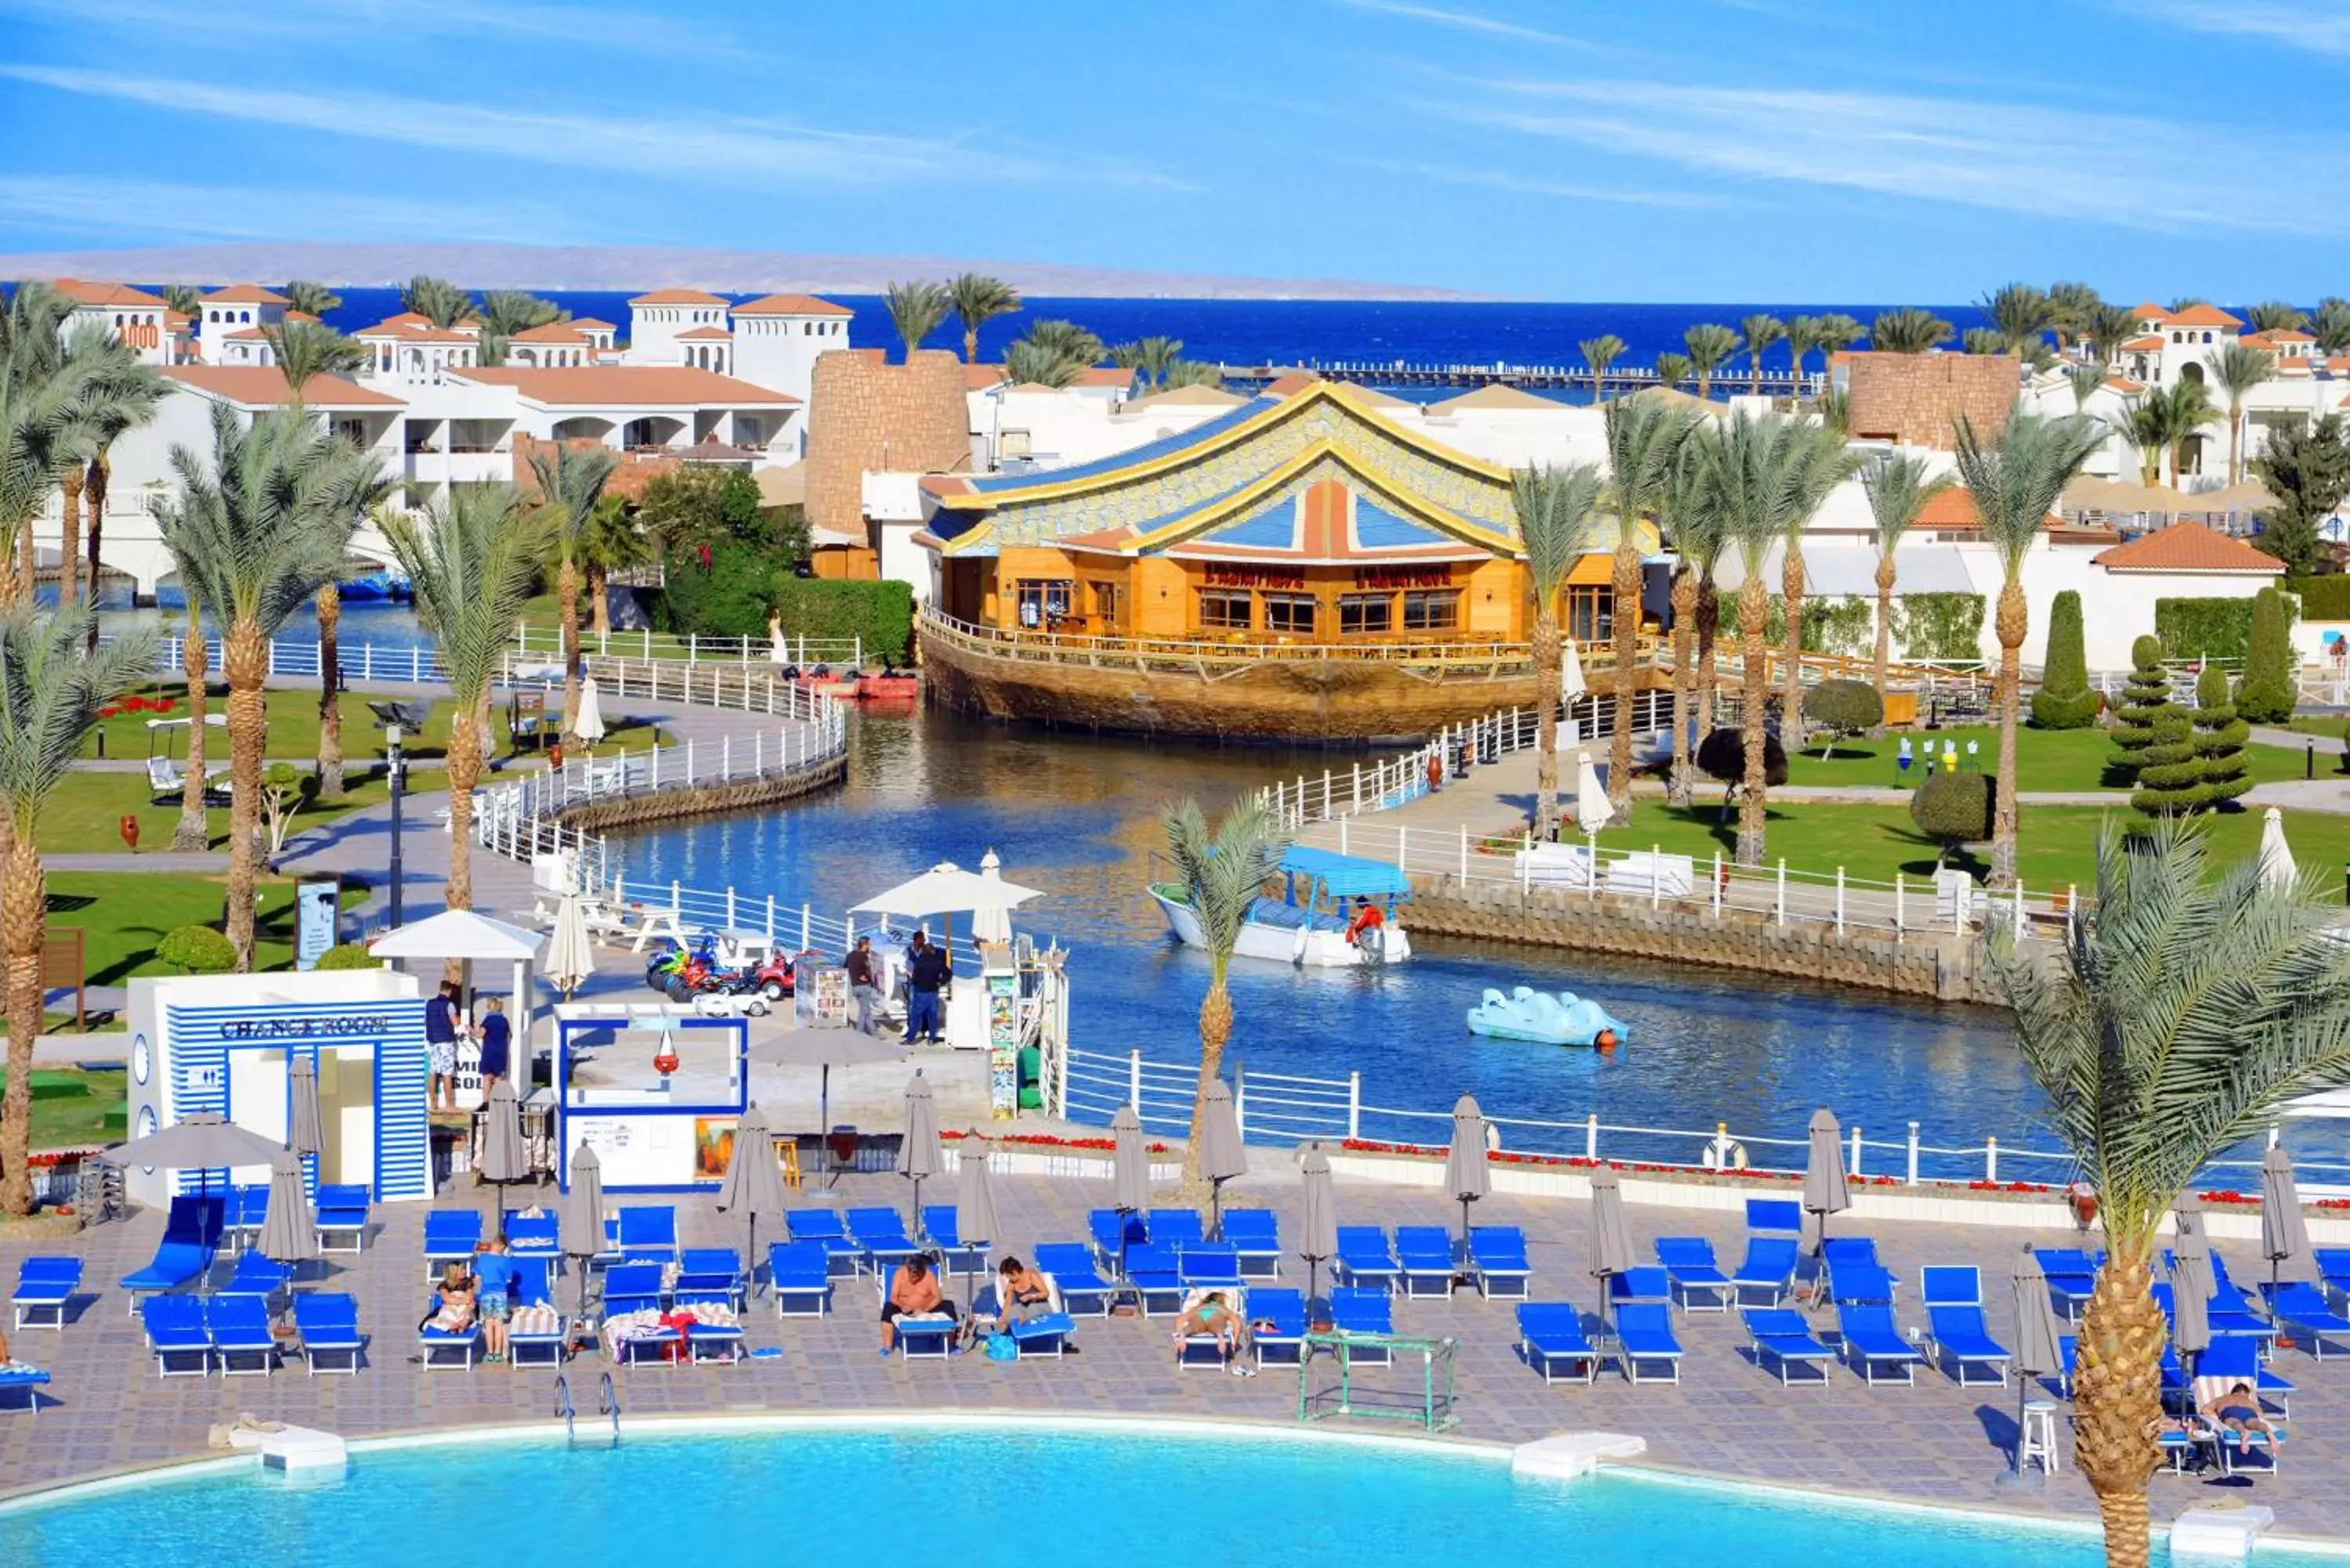 Lake view in Pickalbatros Dana Beach Resort - Hurghada